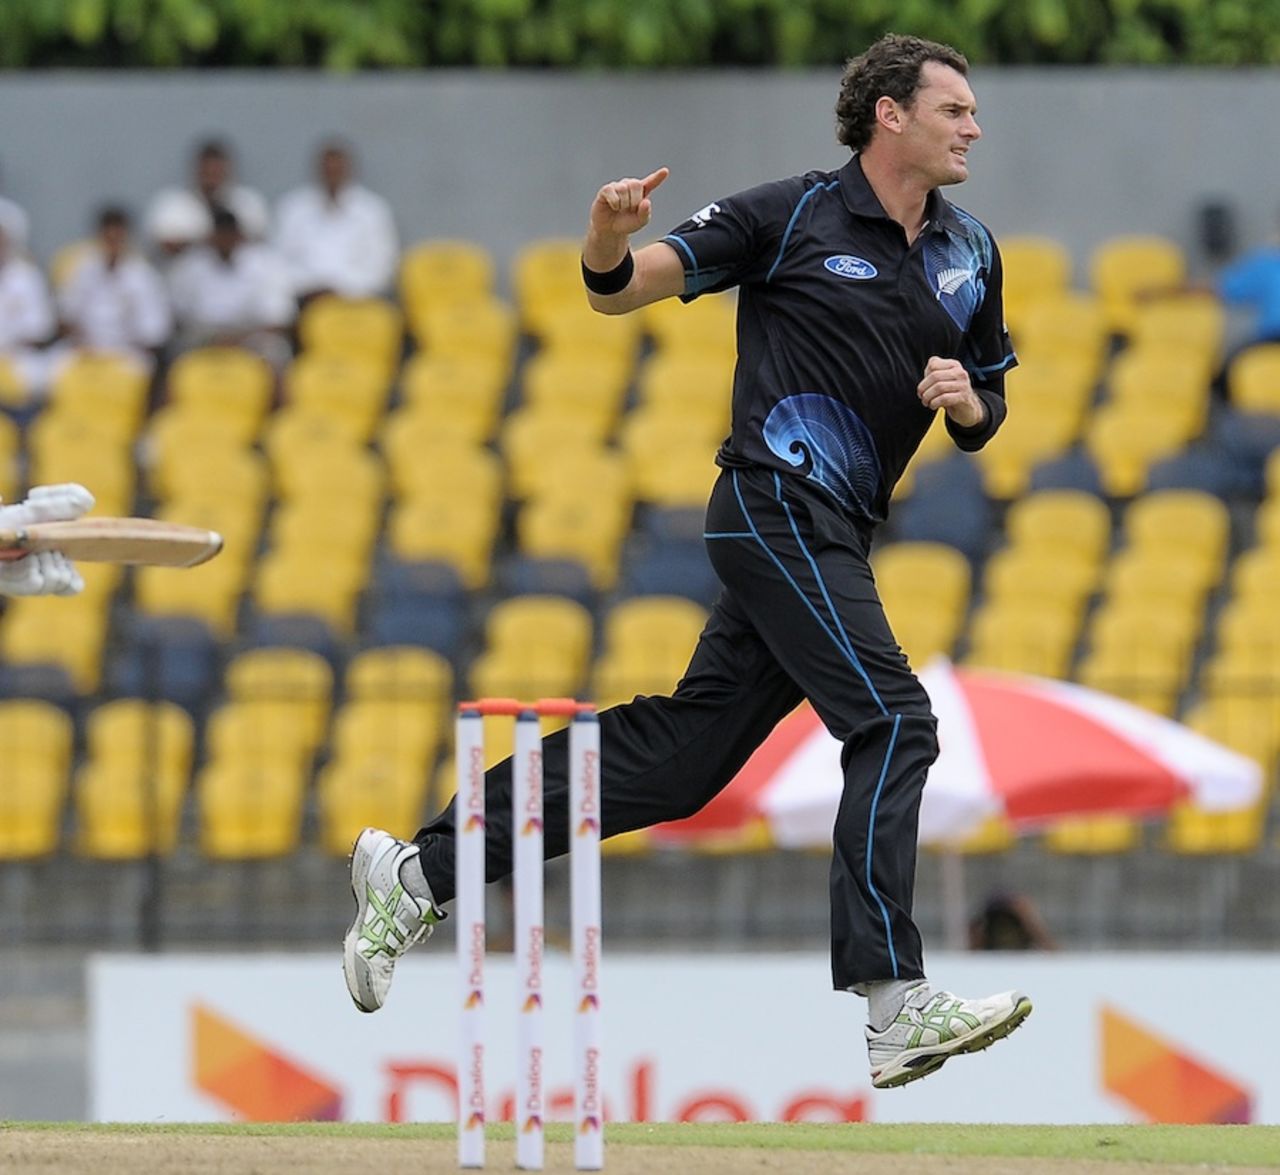 Kyle Mills celebrates Dimuth Karunaratne's wicket, Sri Lanka v New Zealand, 2nd ODI, Hambantota, November 12, 2013